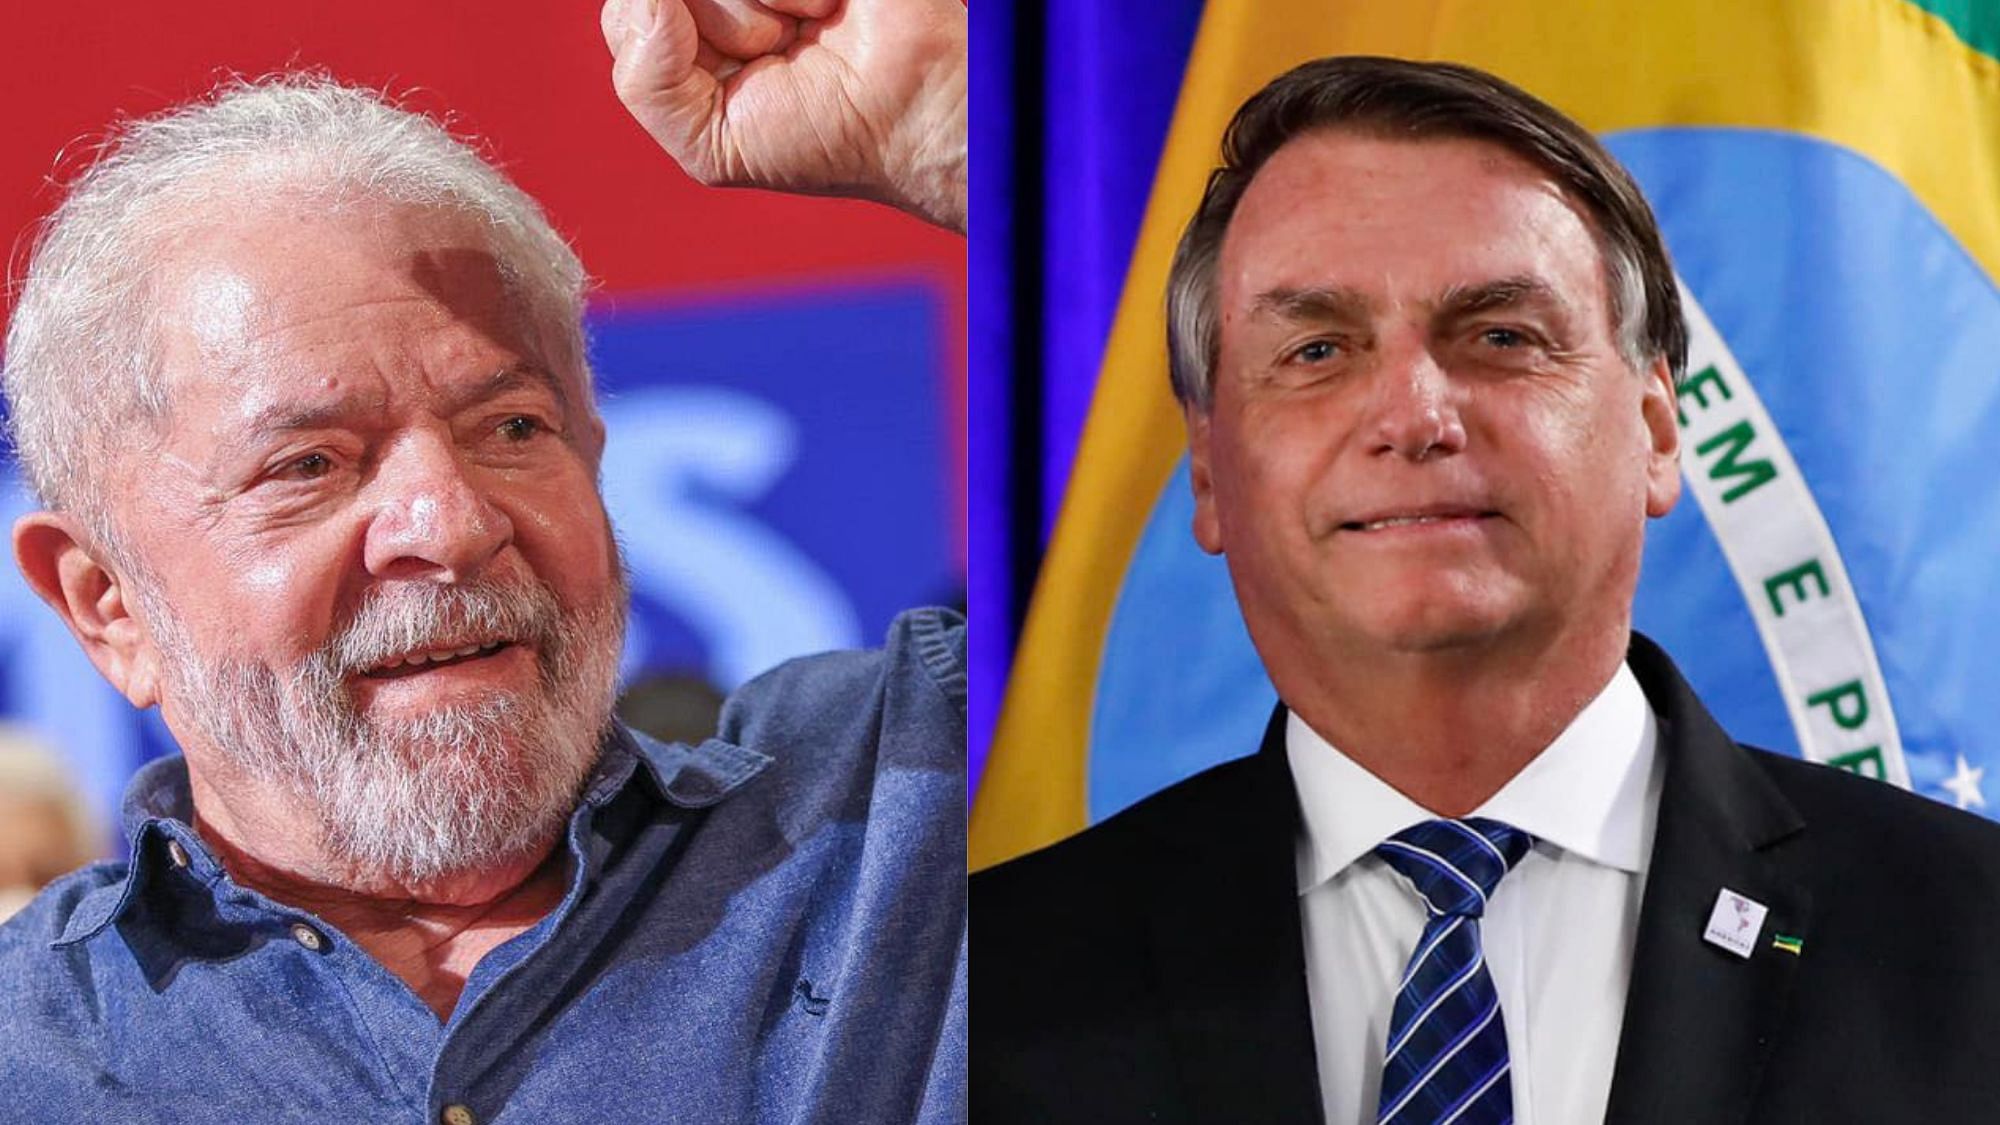 <div class="paragraphs"><p>Luiz Inácio Lula da Silva (left) and Jair Bolsonaro.</p></div>